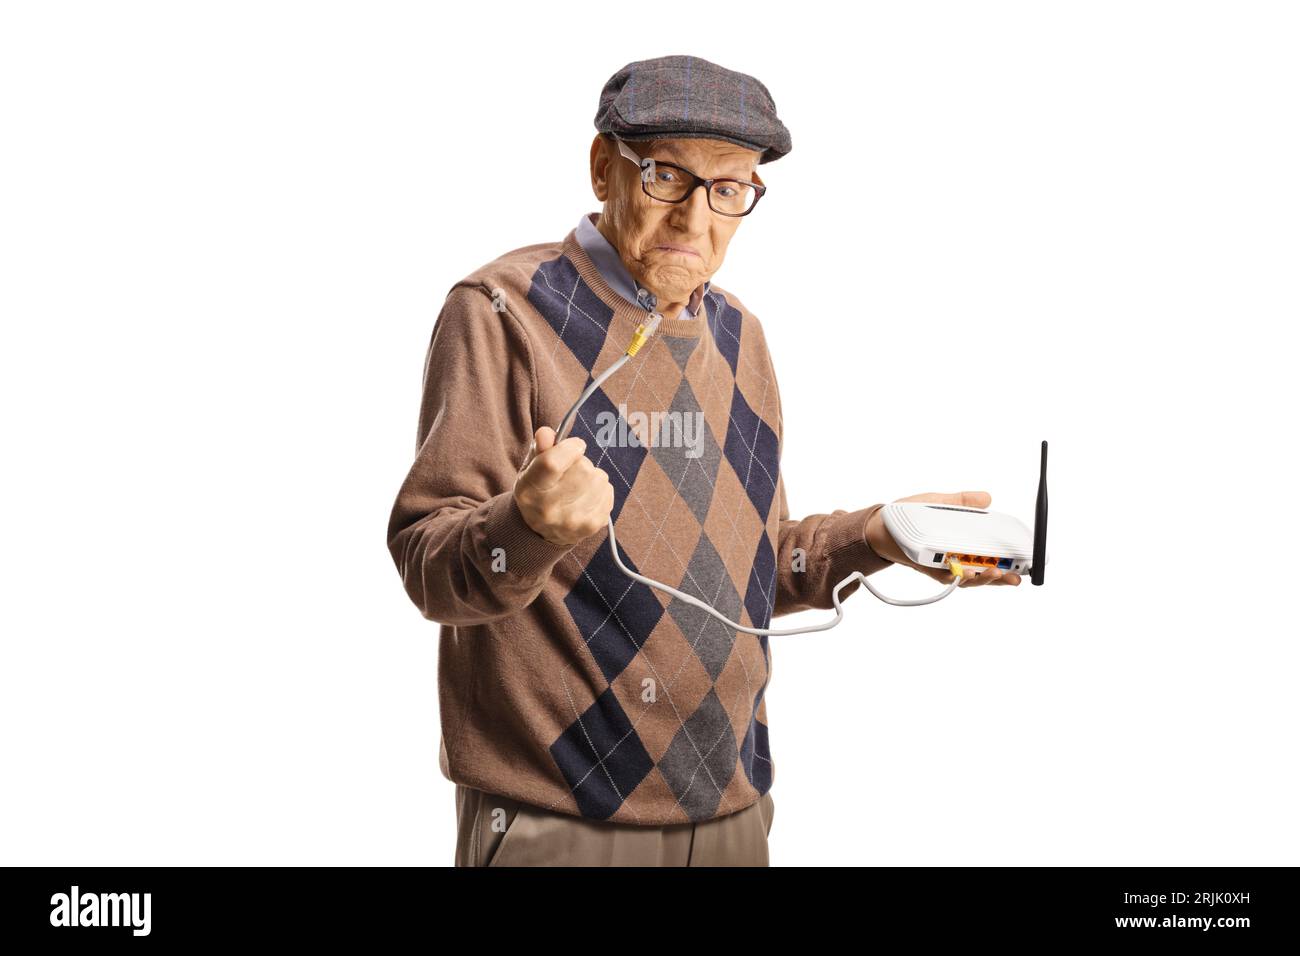 Vieux homme grincheux tenant un câble de routeur isolé sur fond blanc Banque D'Images